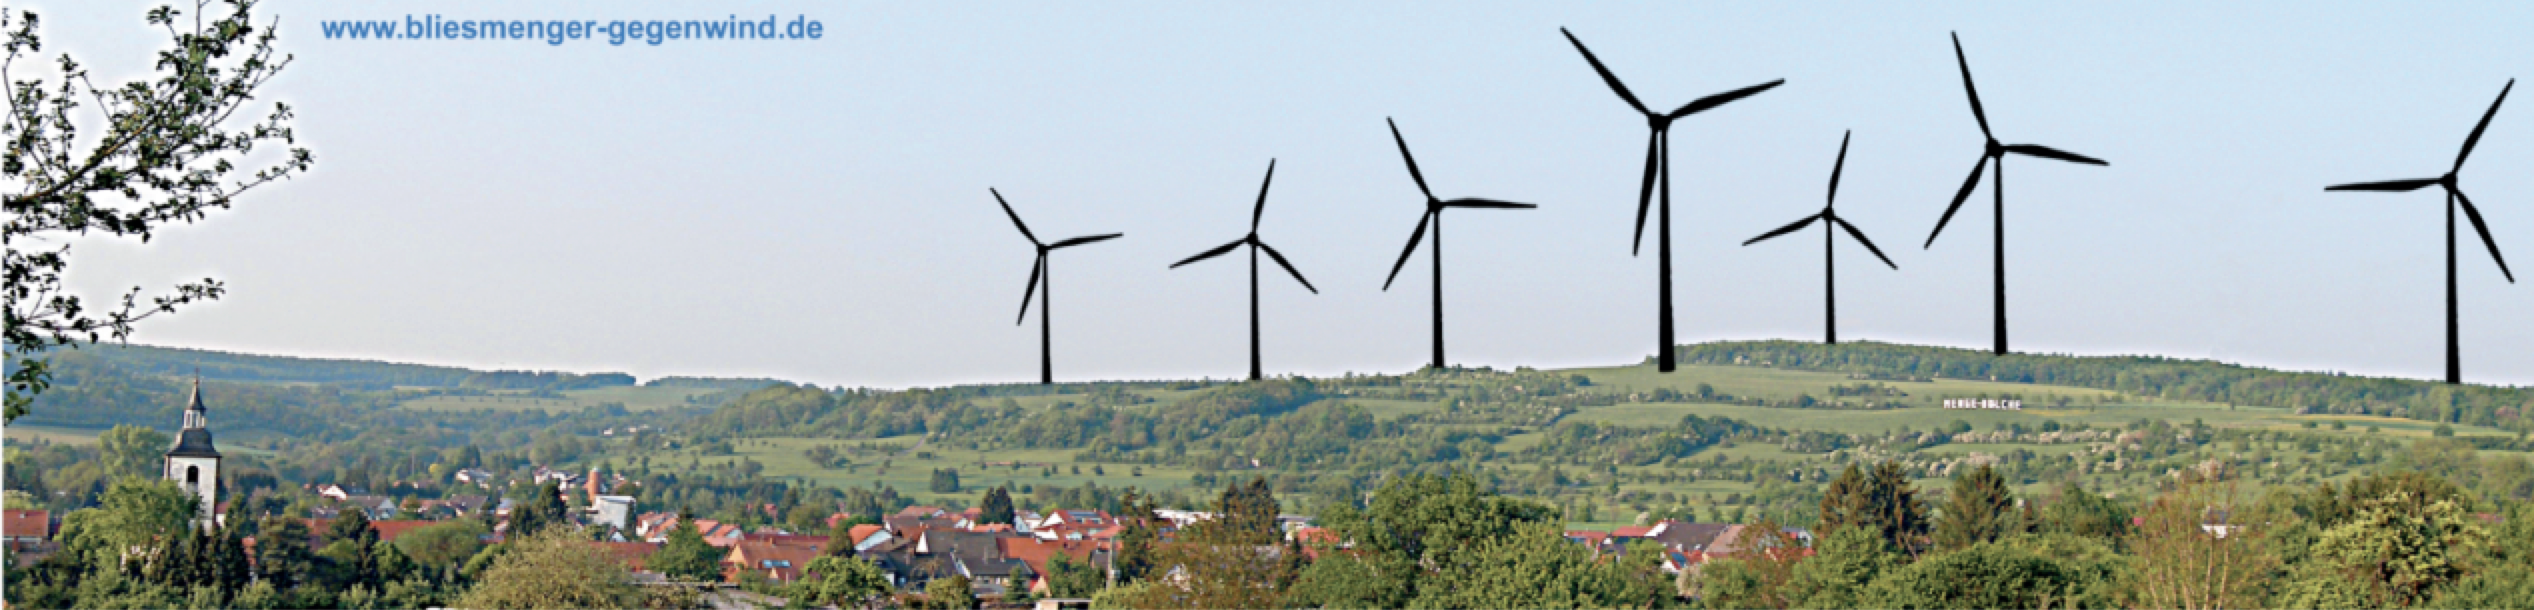 Pressemitteilung Bürgerinitiative „Bliesmenger-Gegenwind“ vom 17. Nov. 2021 zum Thema Windkraftwerksplanungen in Mandelbachtal